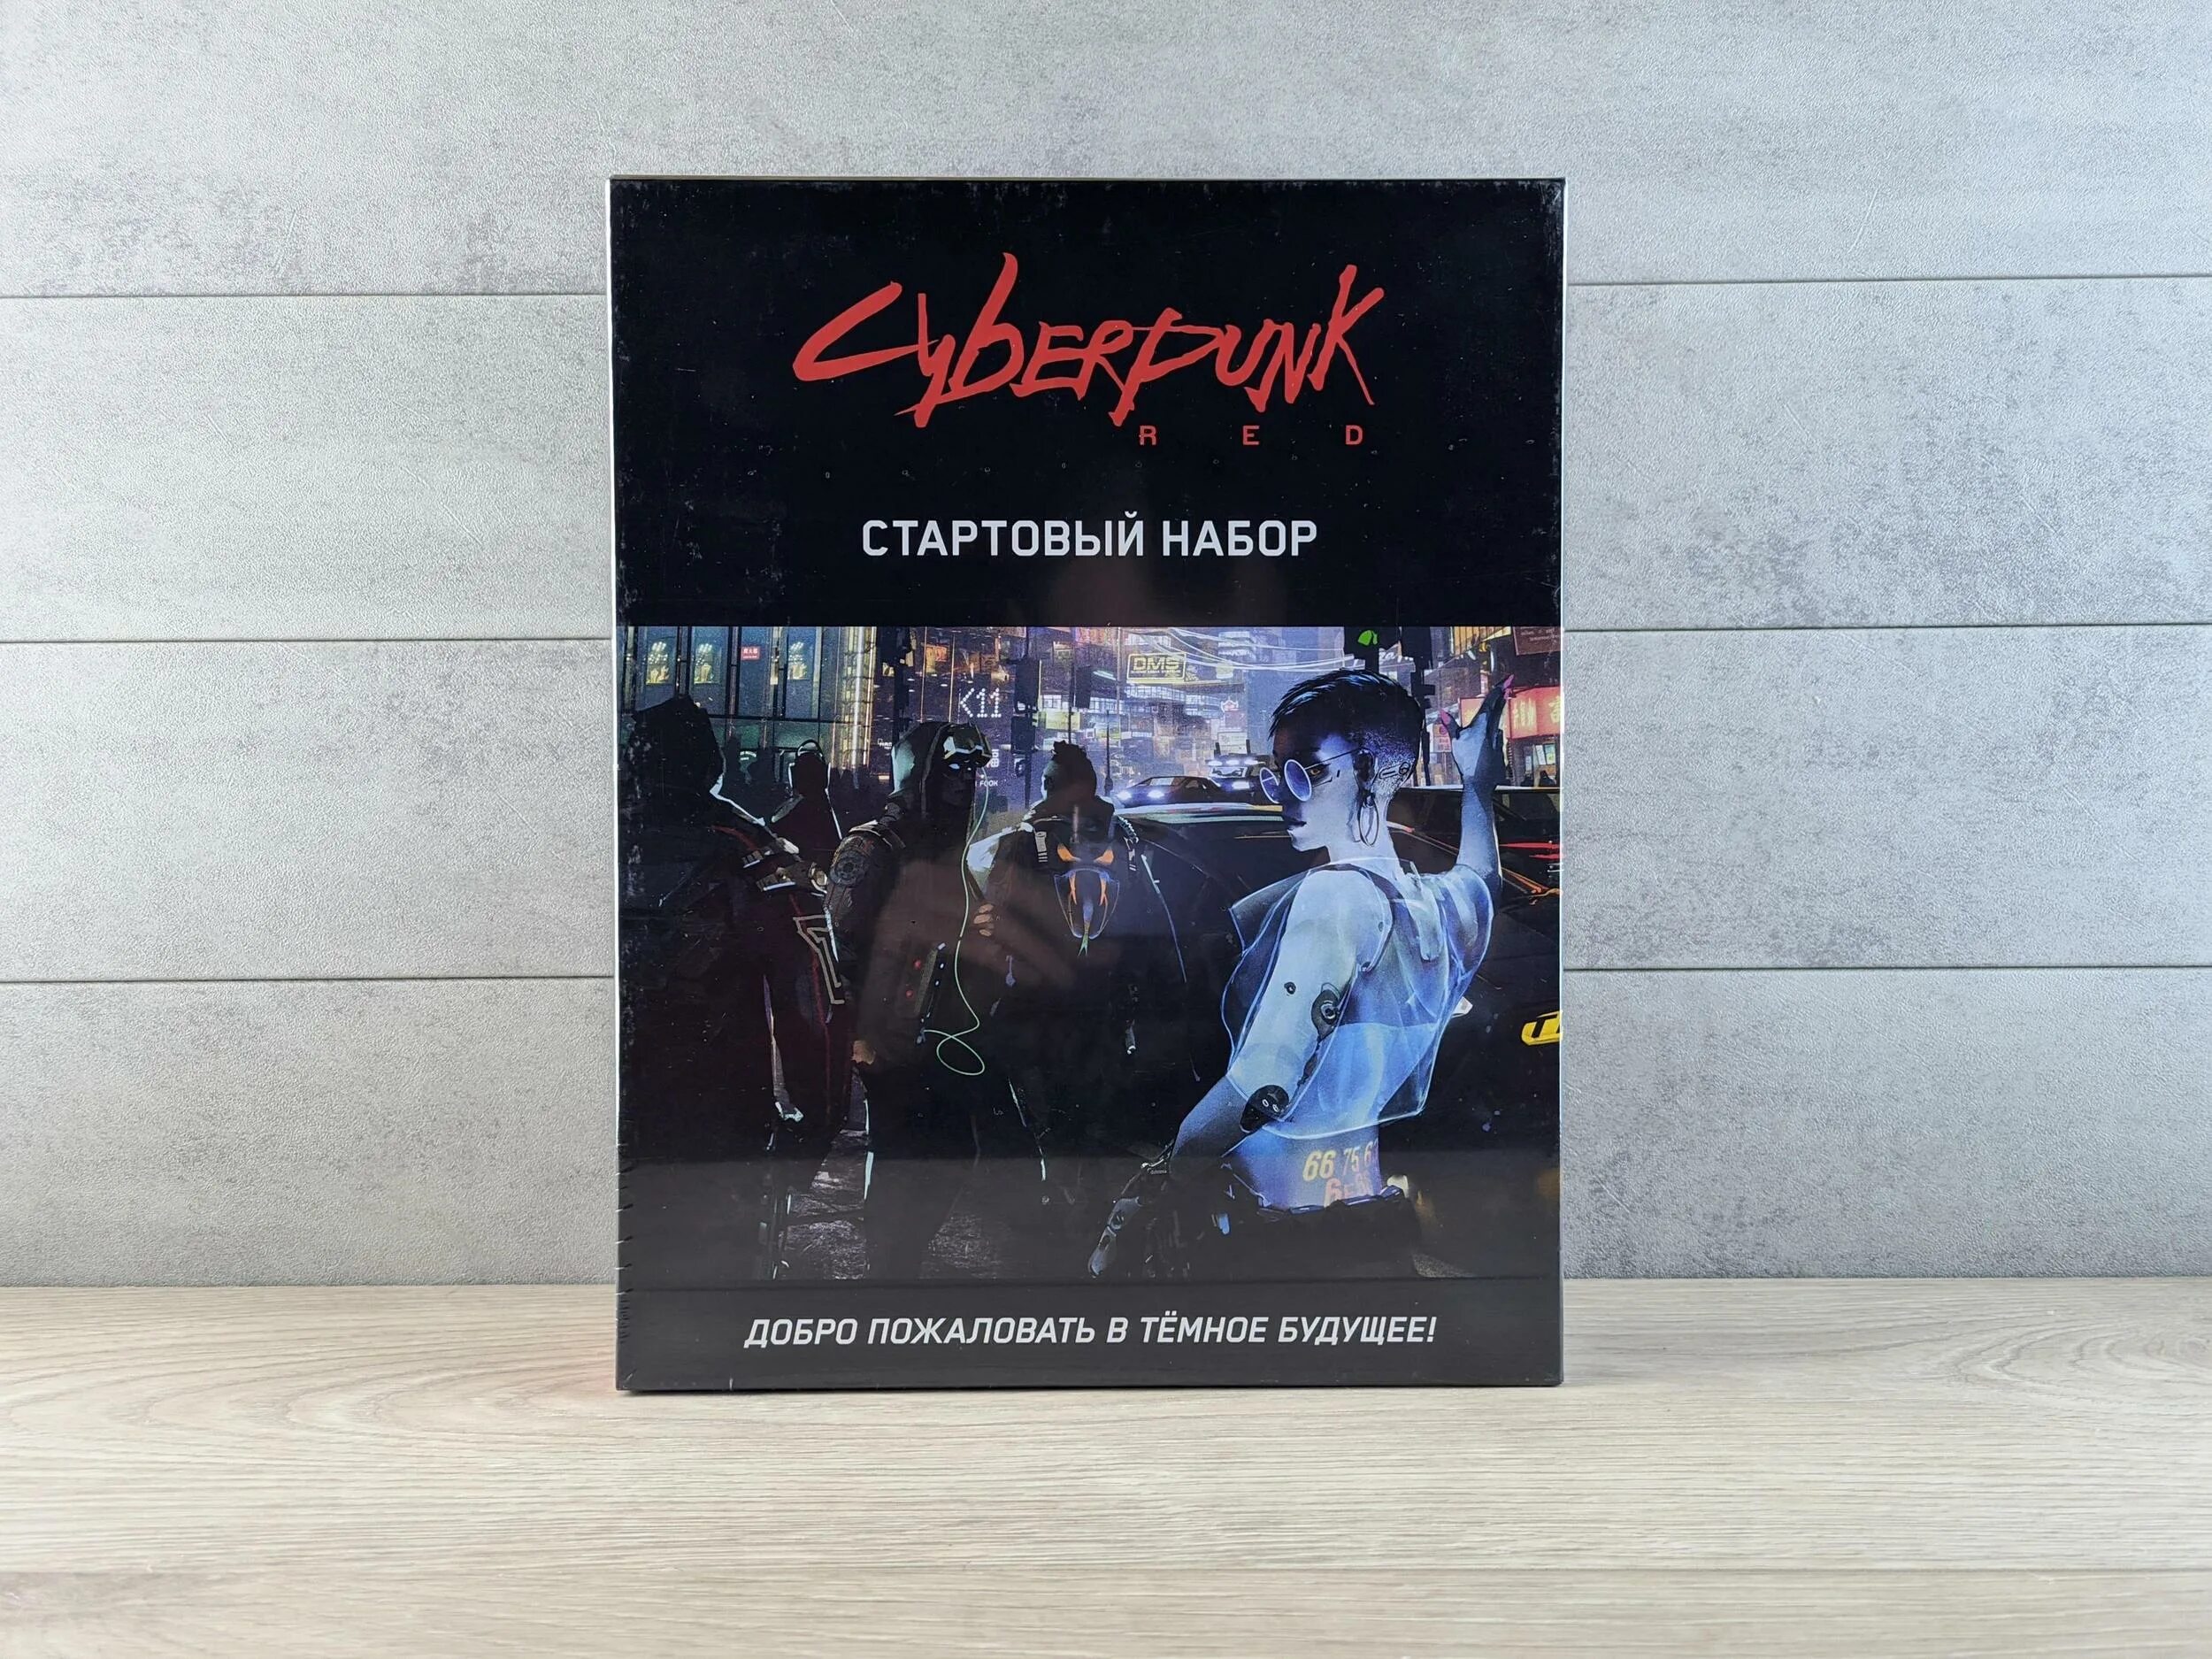 Cyberpunk red настольная игра купить на русском фото 77